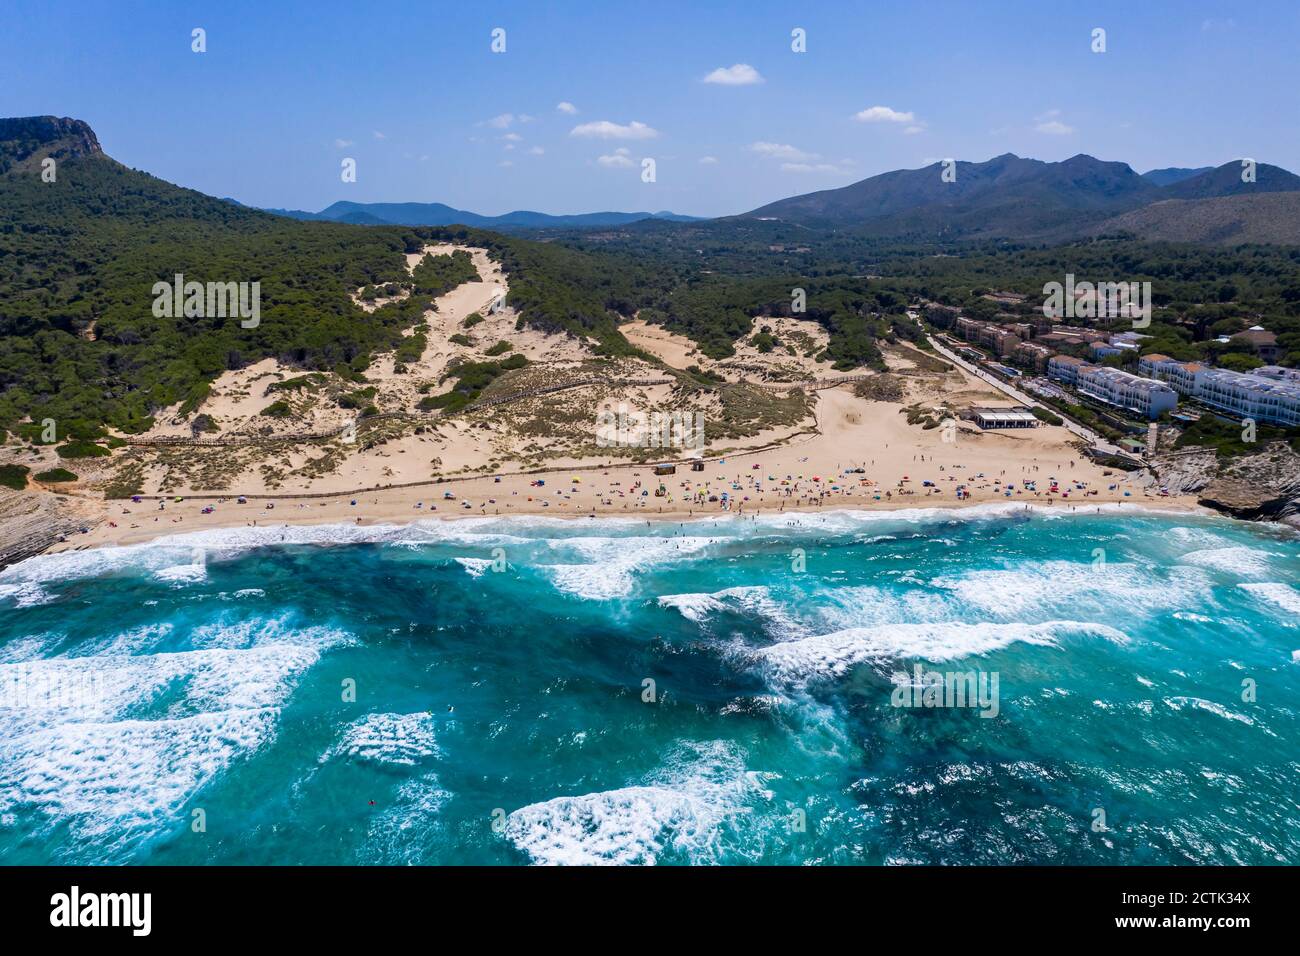 Spain, Mallorca, Cala Mesquida, Aerial view of Cala Agulla beach in summer Stock Photo